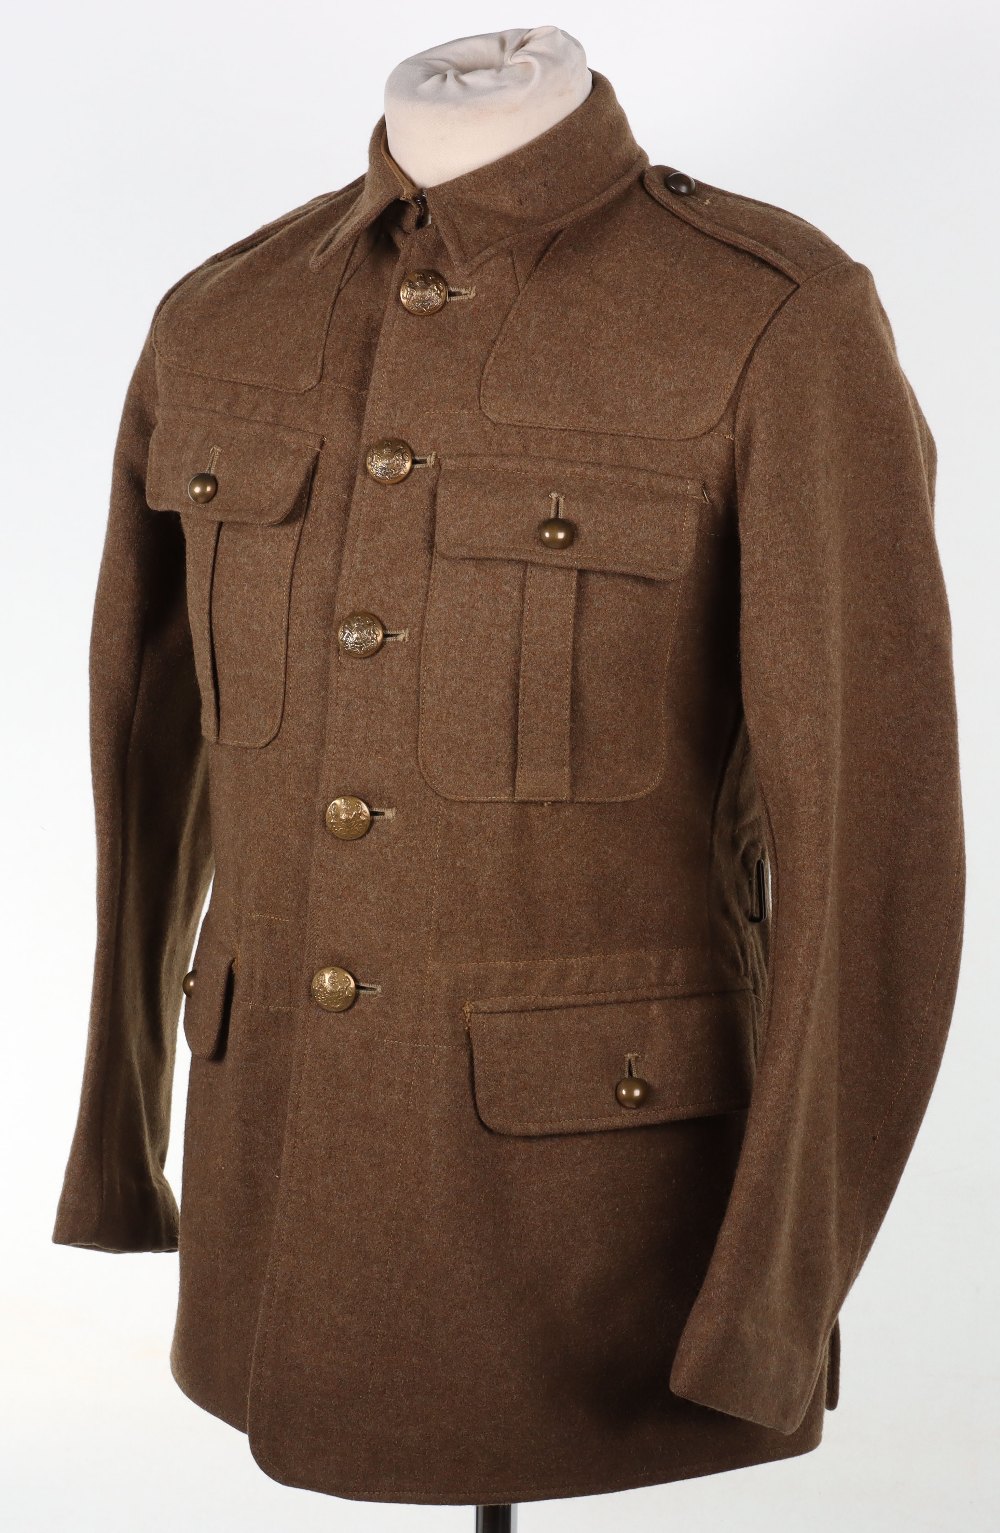 1922 Pattern Service Dress Tunic - Image 4 of 12